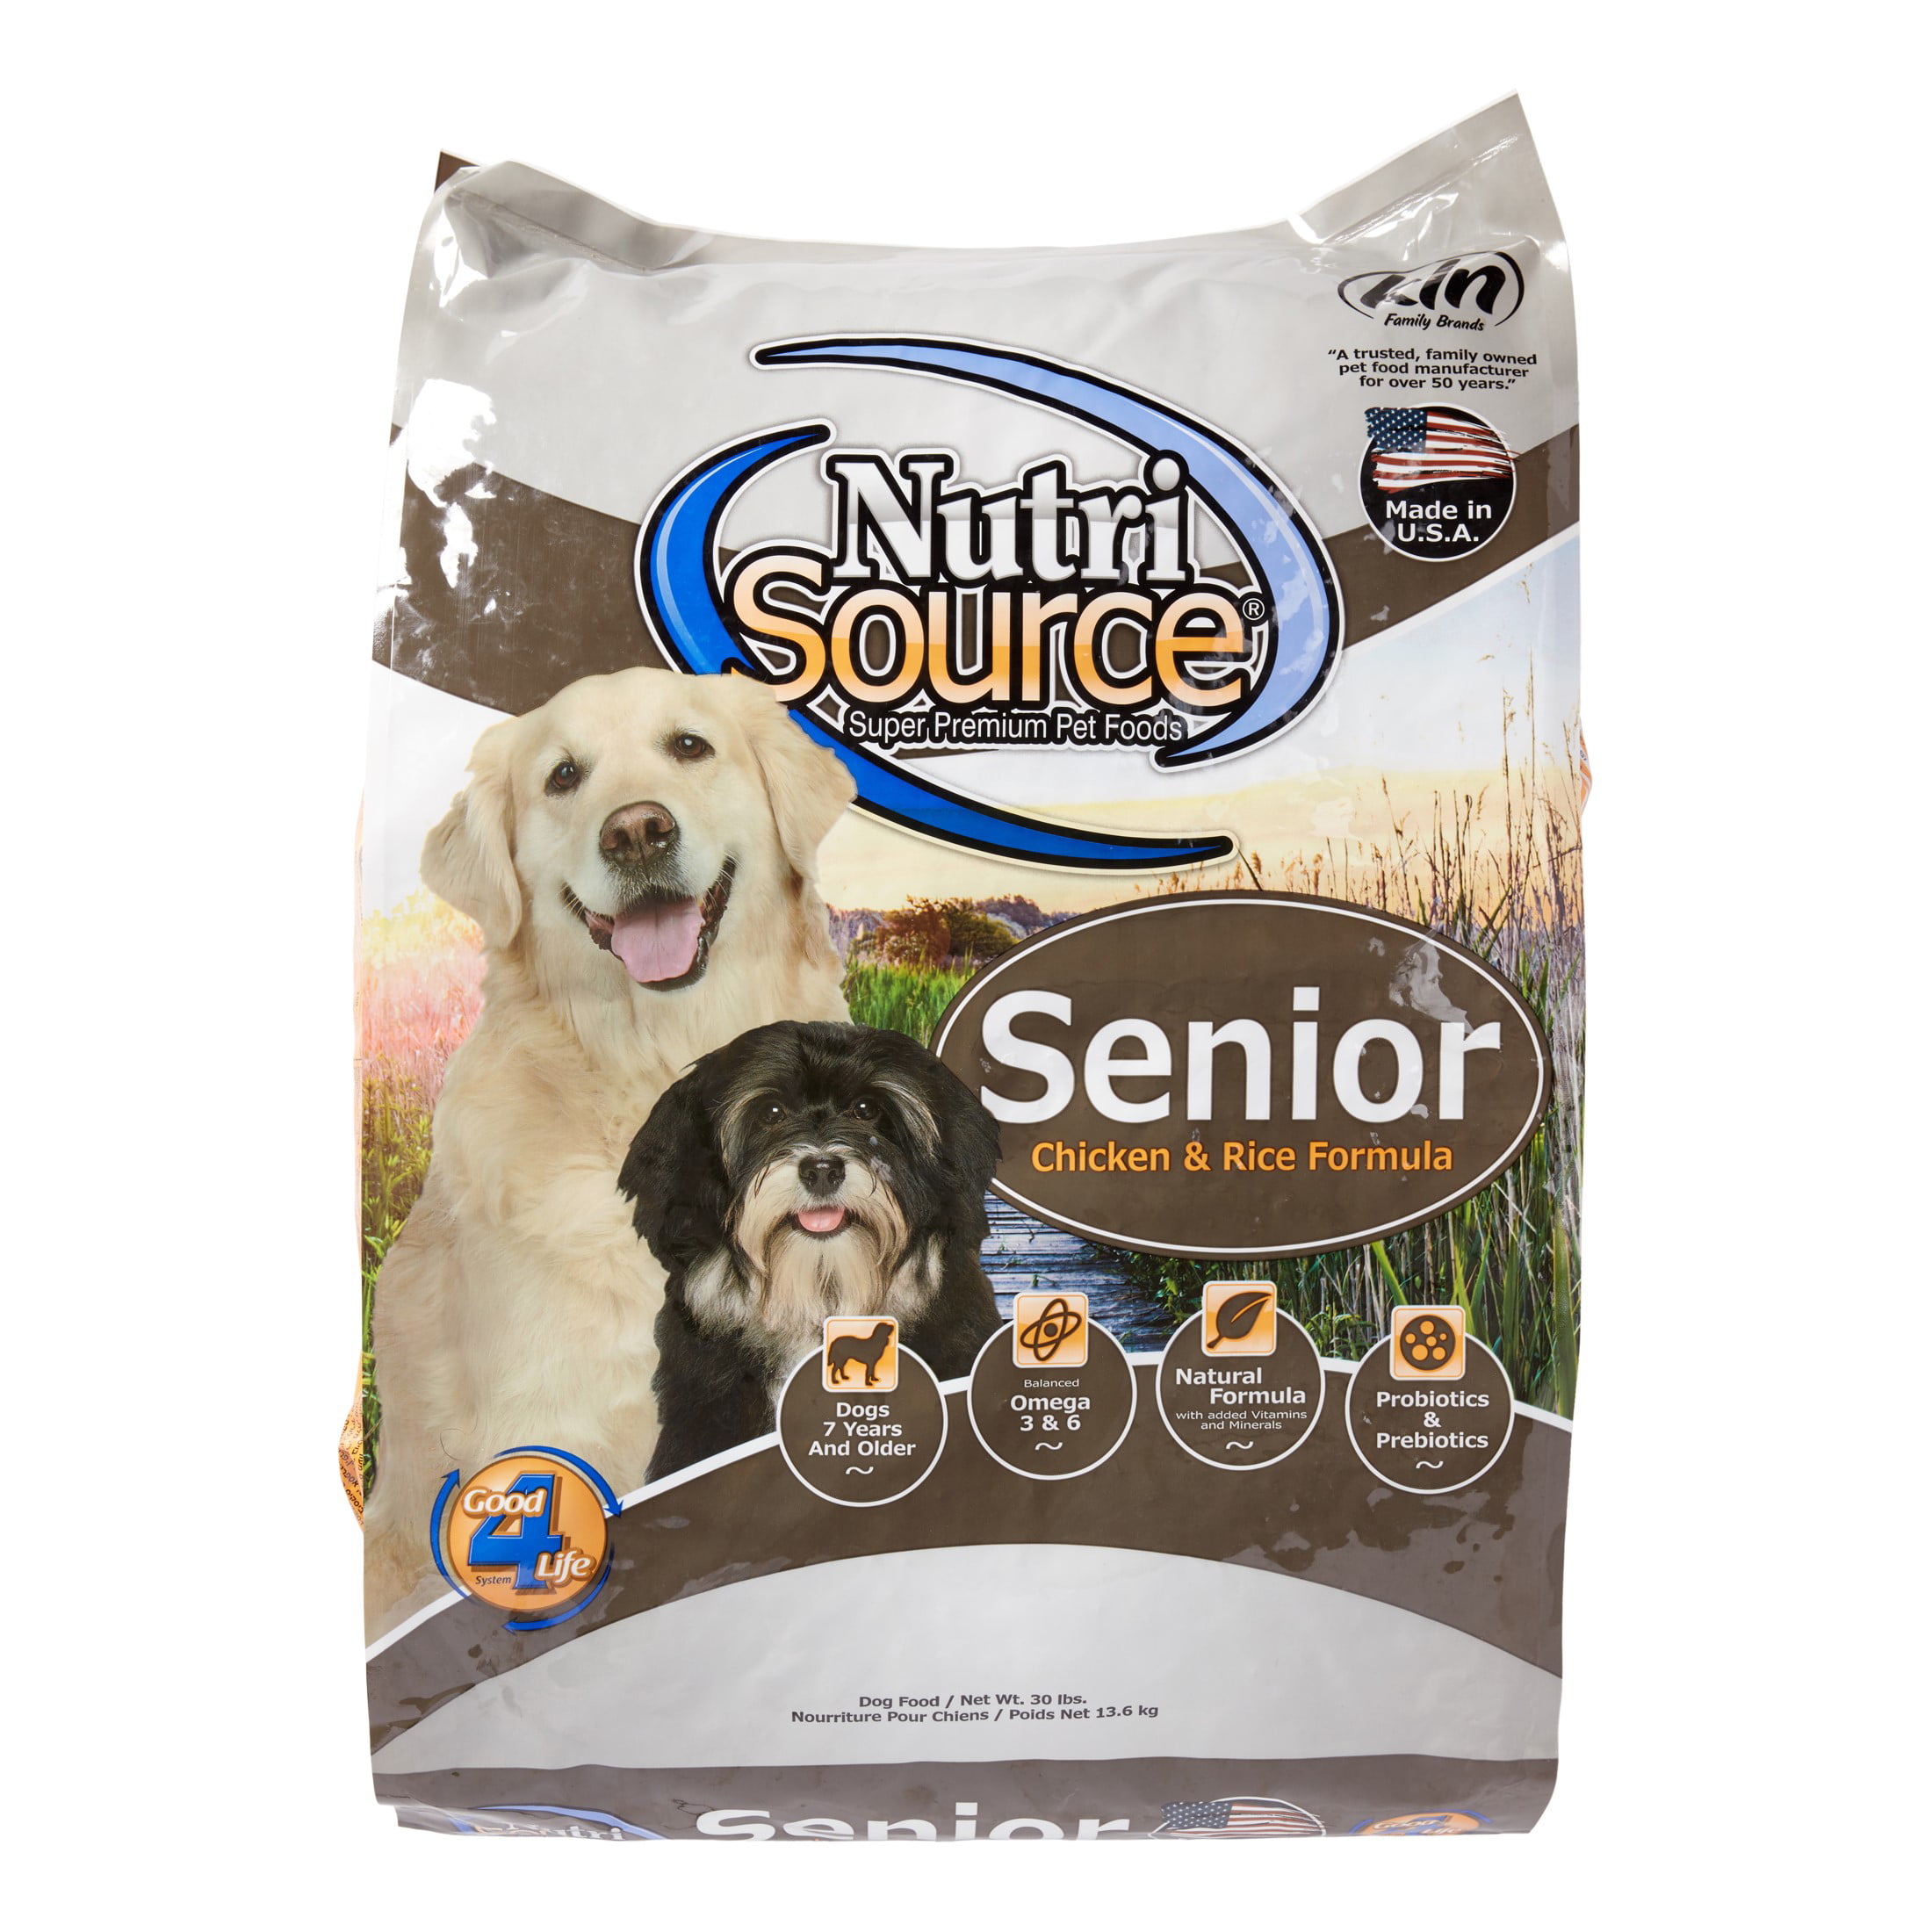 NutriSource Senior Dry Dog Food